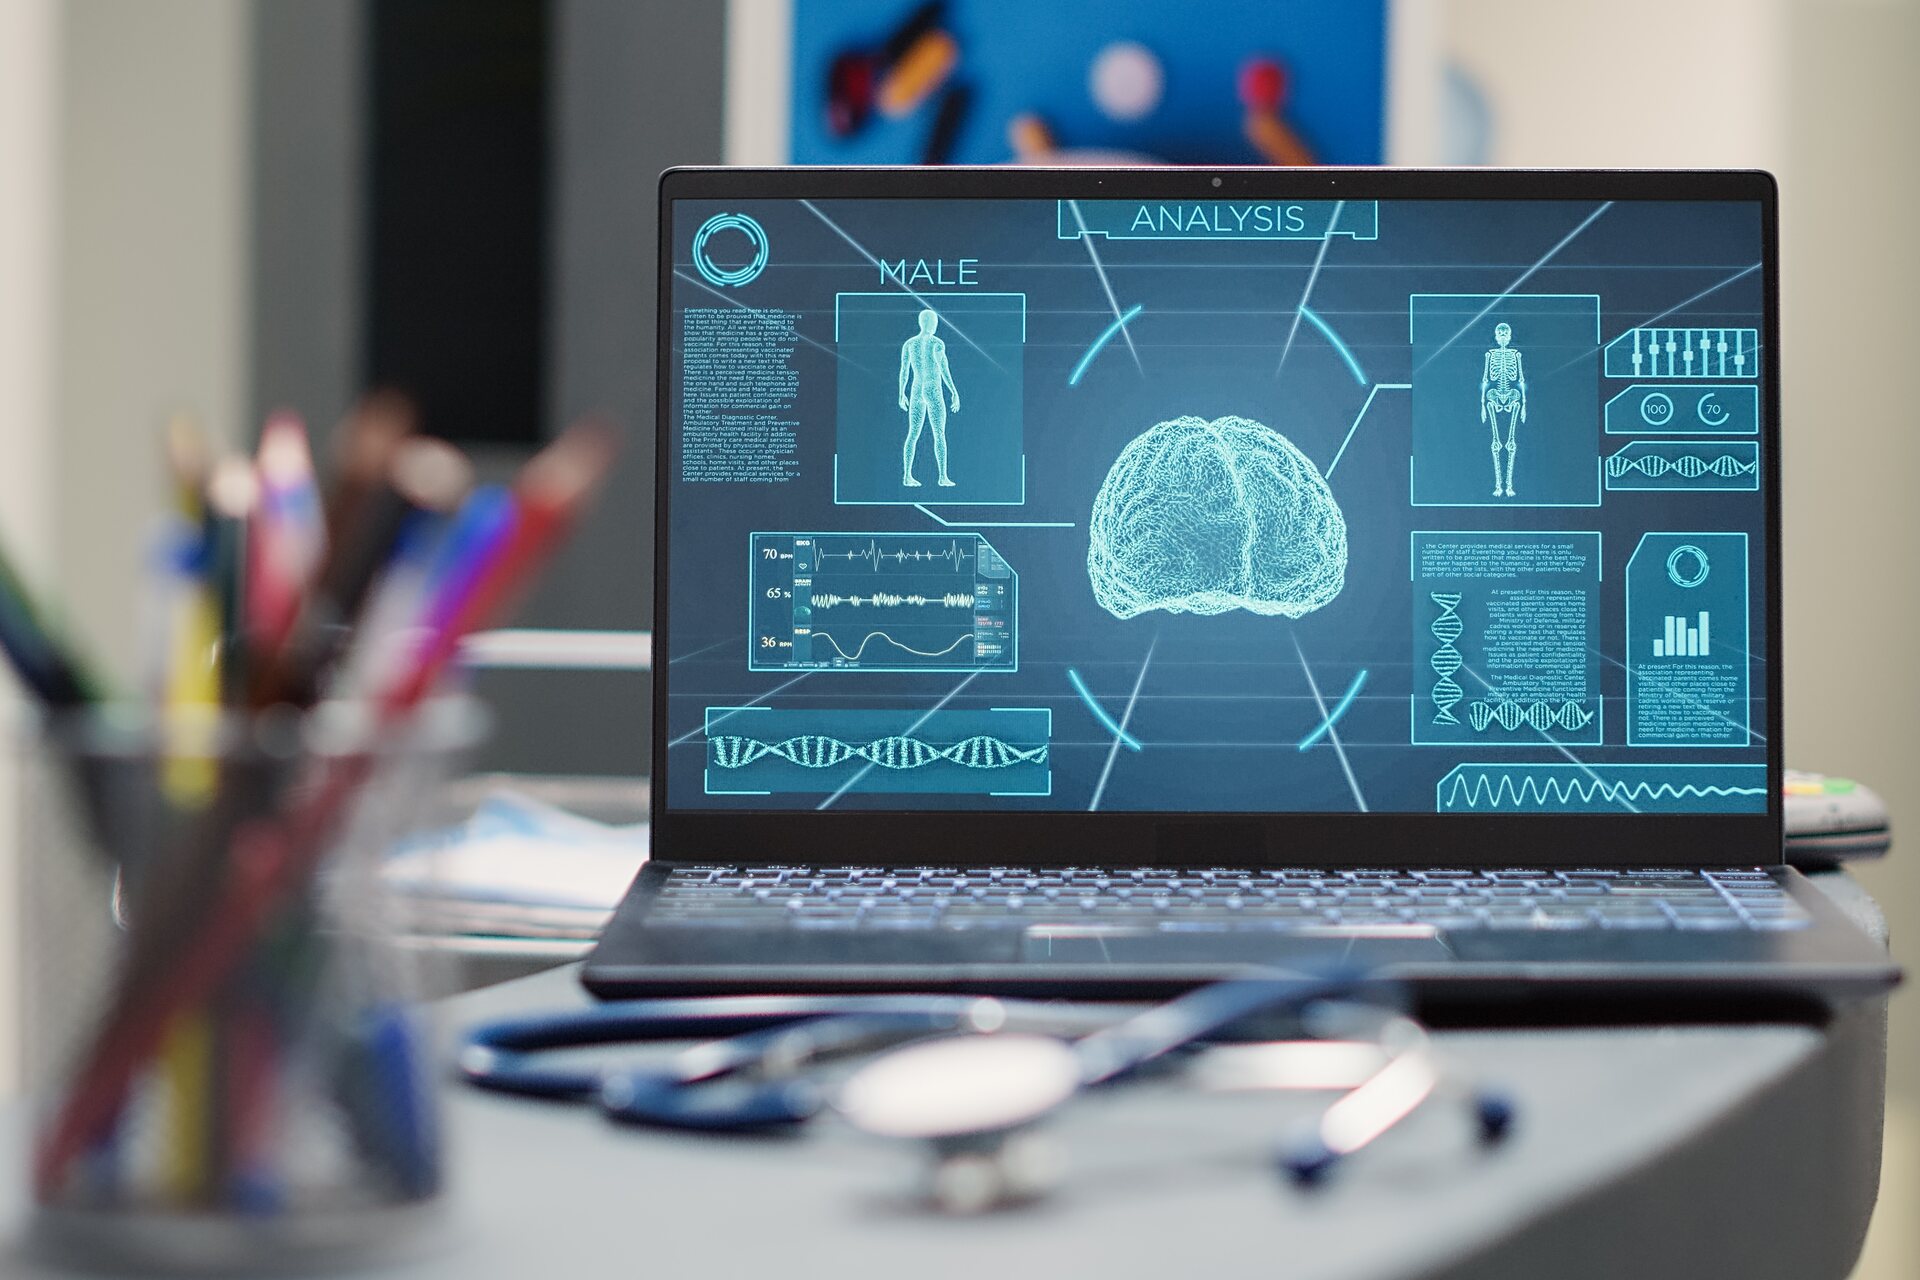 Ολογράμματα: χάρη στα avatars και τις τεχνολογίες τεχνητής νοημοσύνης, είναι δυνατός ο εκδημοκρατισμός της πρόσβασης στην ιατρική περίθαλψη